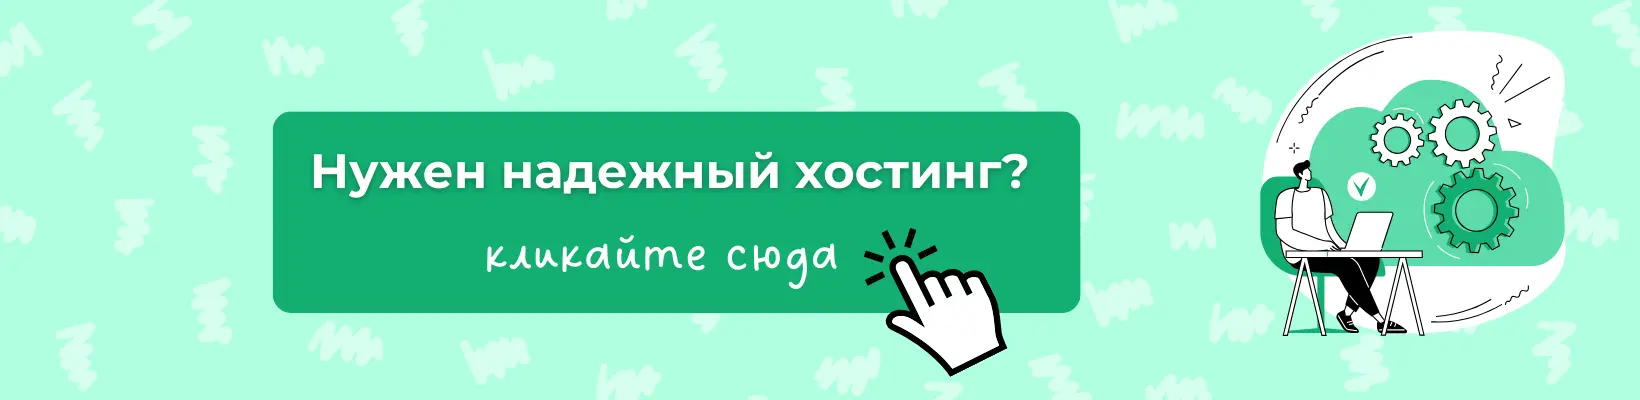 Где купить хостинг онлайн для сайта в Украине